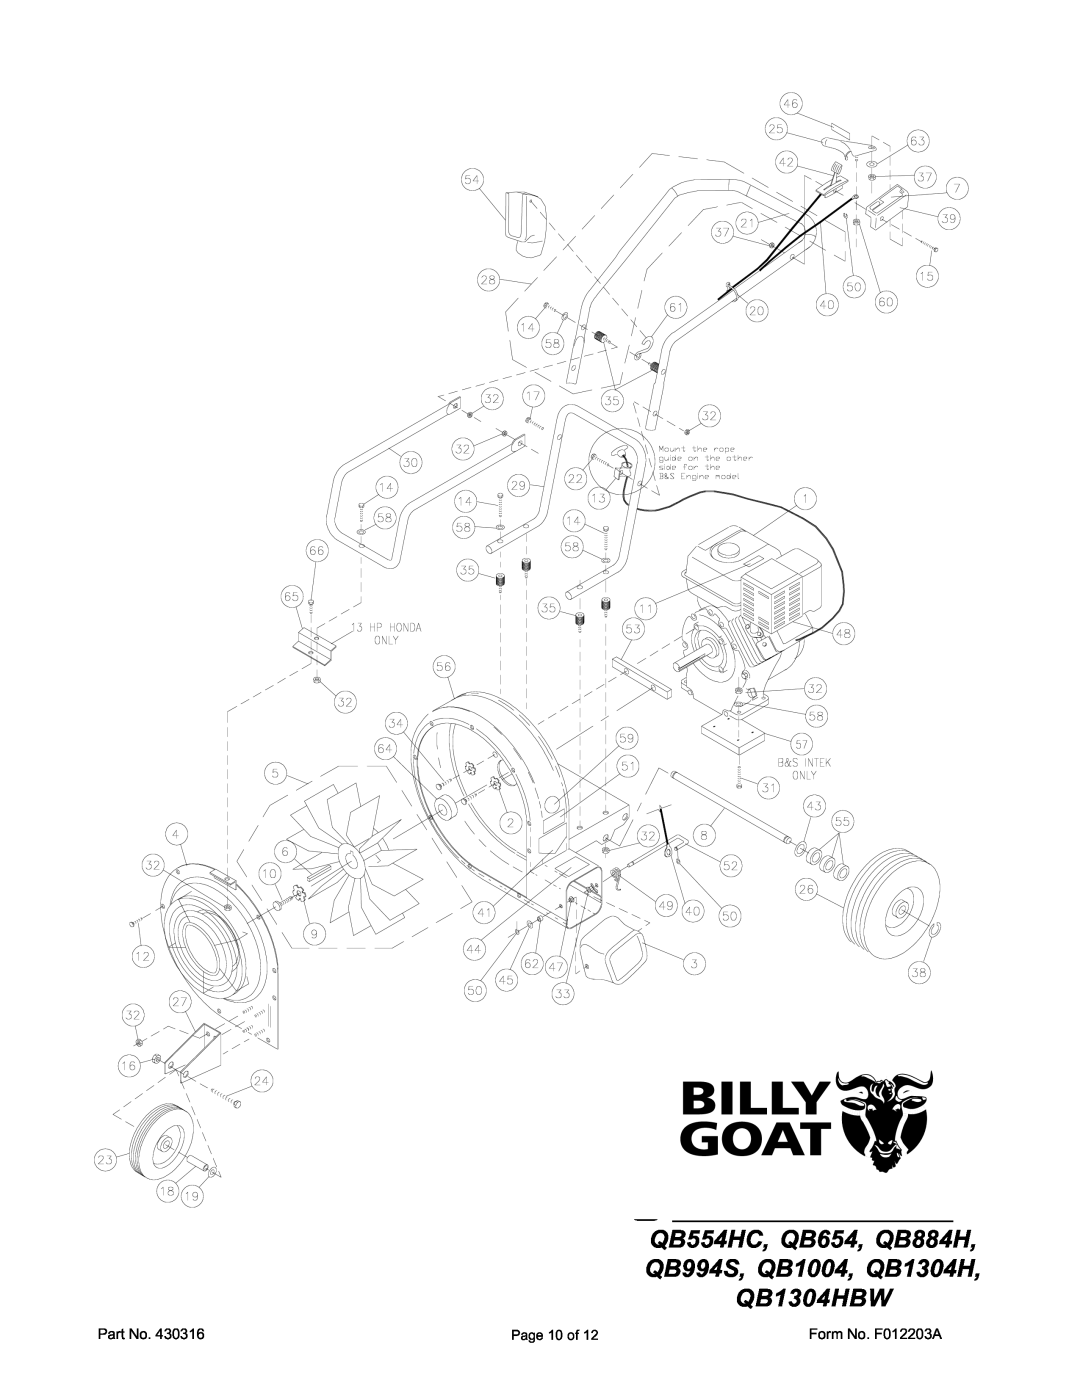 Billy Goat QB1004, QB884H, QB1304H, QB994S, QB654, QB1304HBW, QB554HC specifications Parts Drawing 